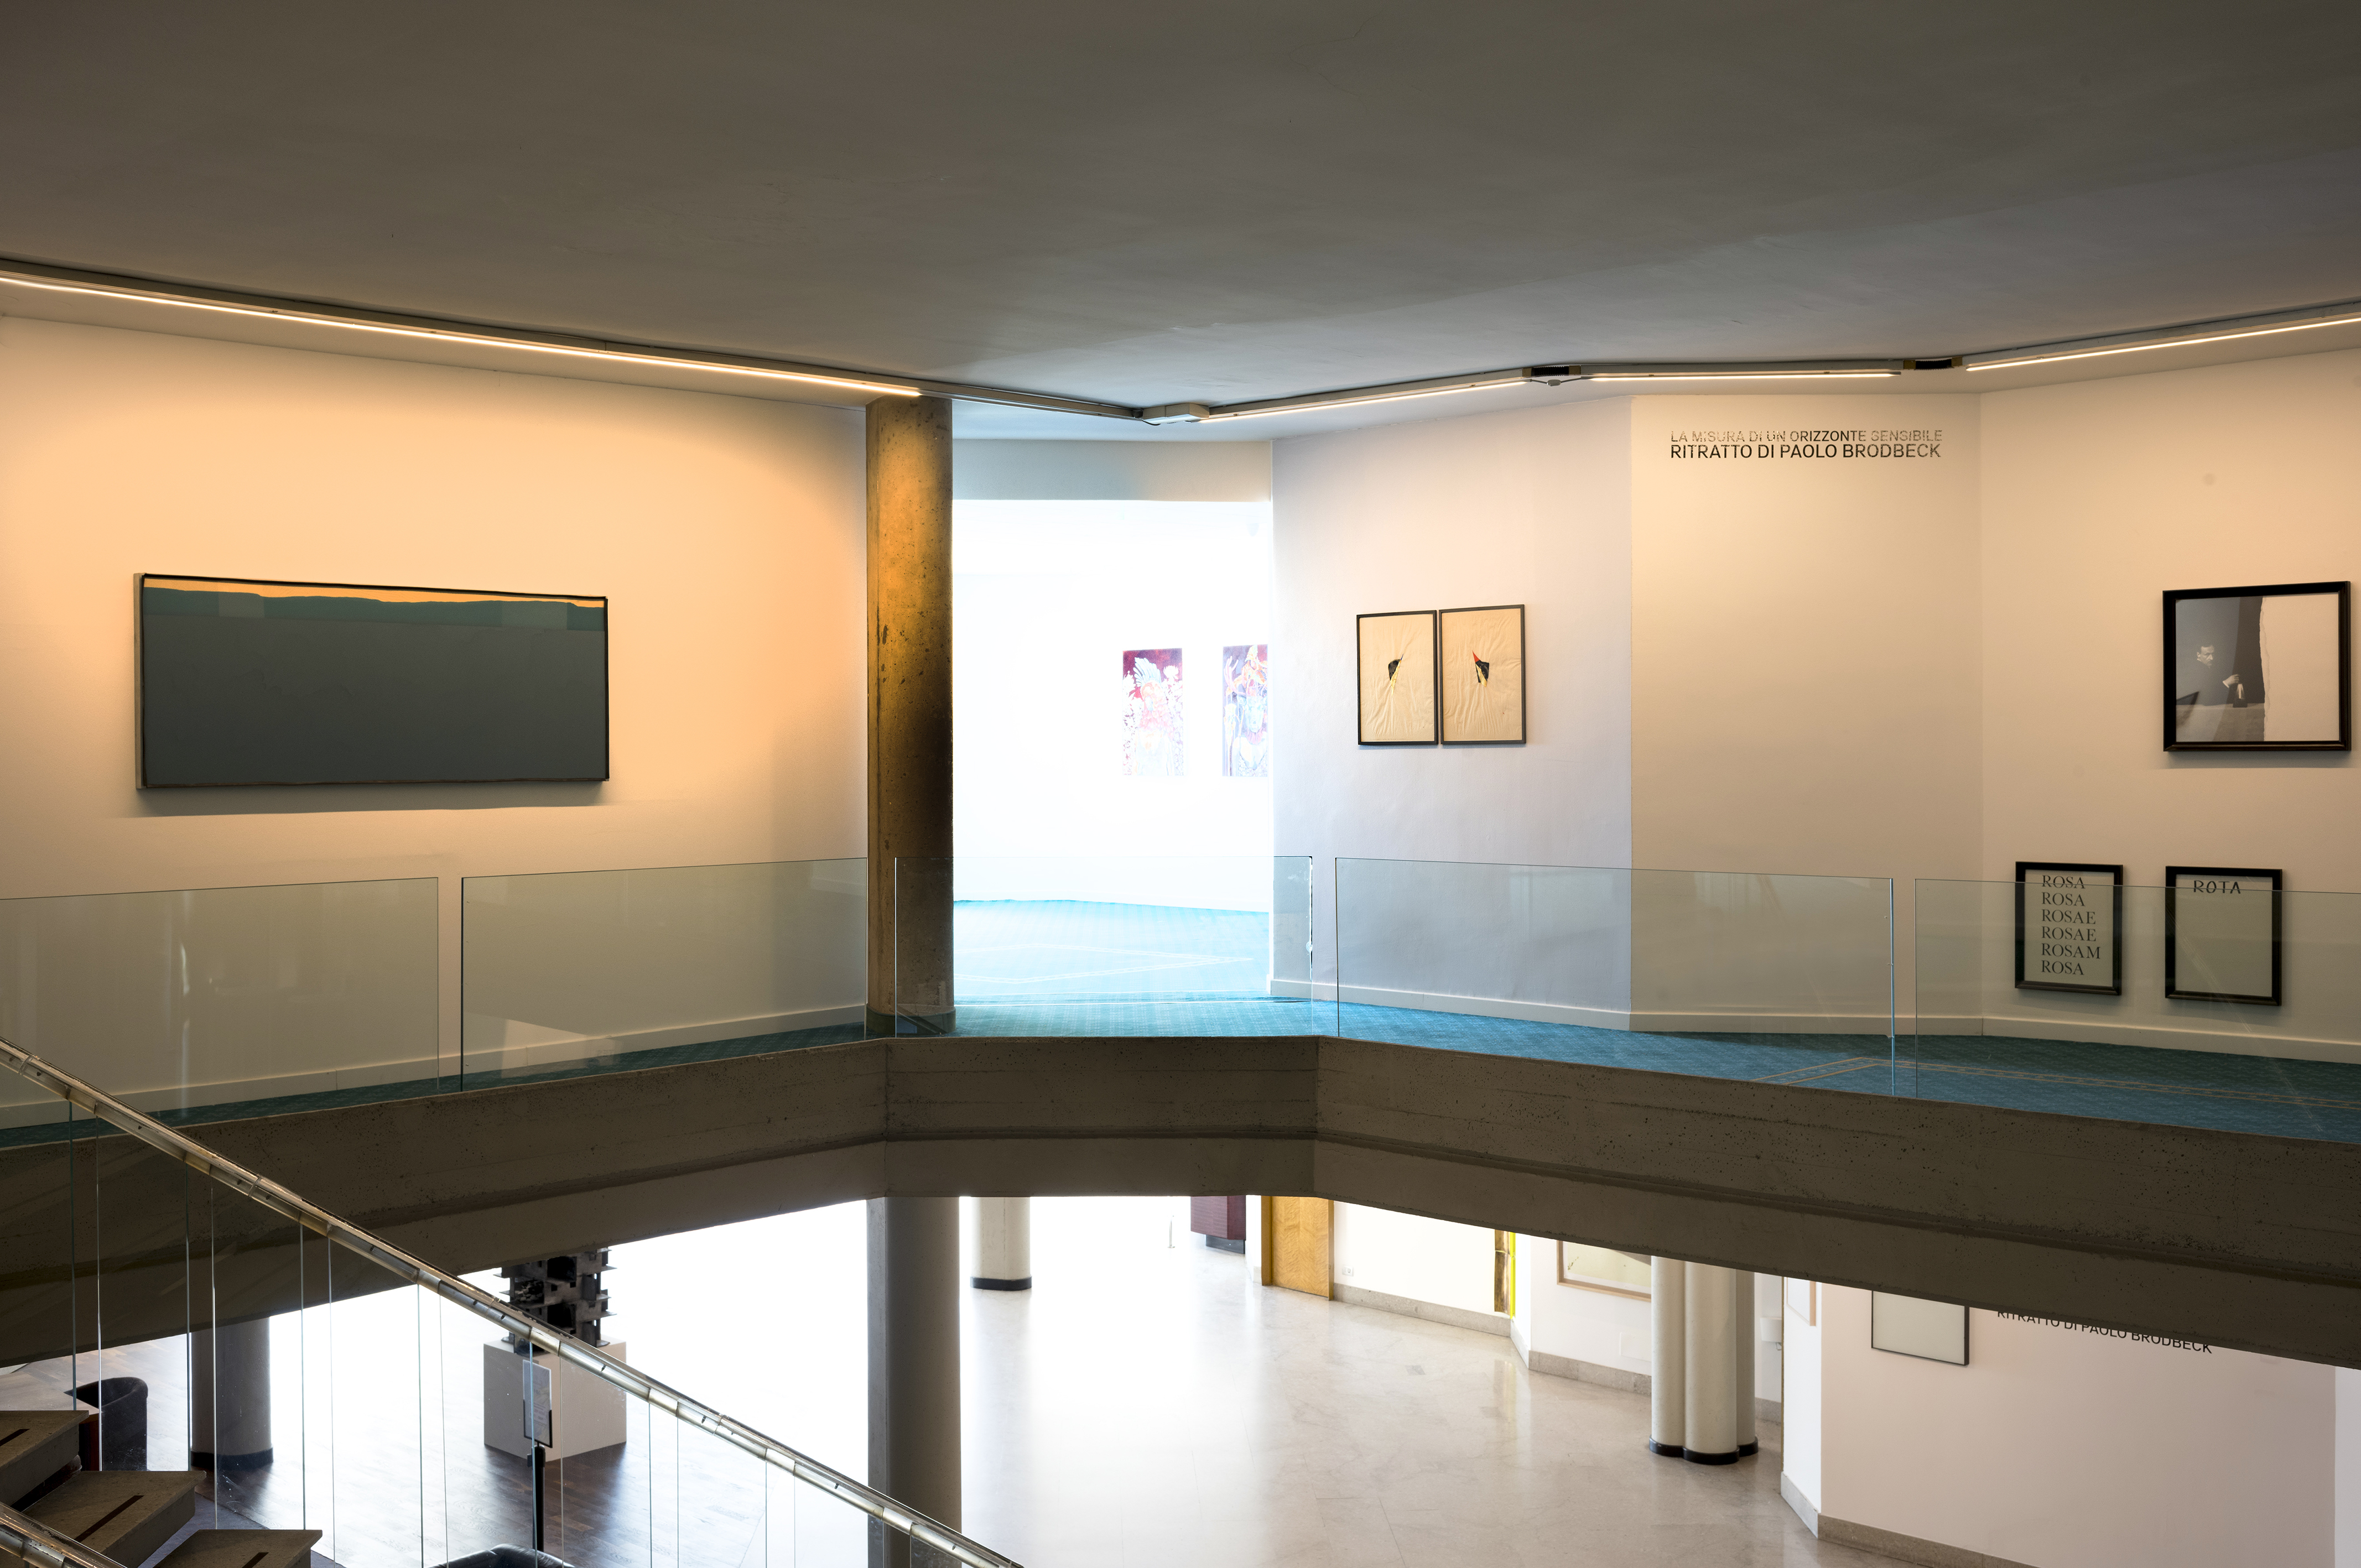 Ritratto di Paolo Brodbeck, Fondazione OELLE, installation view (credits by Anna Tusa)